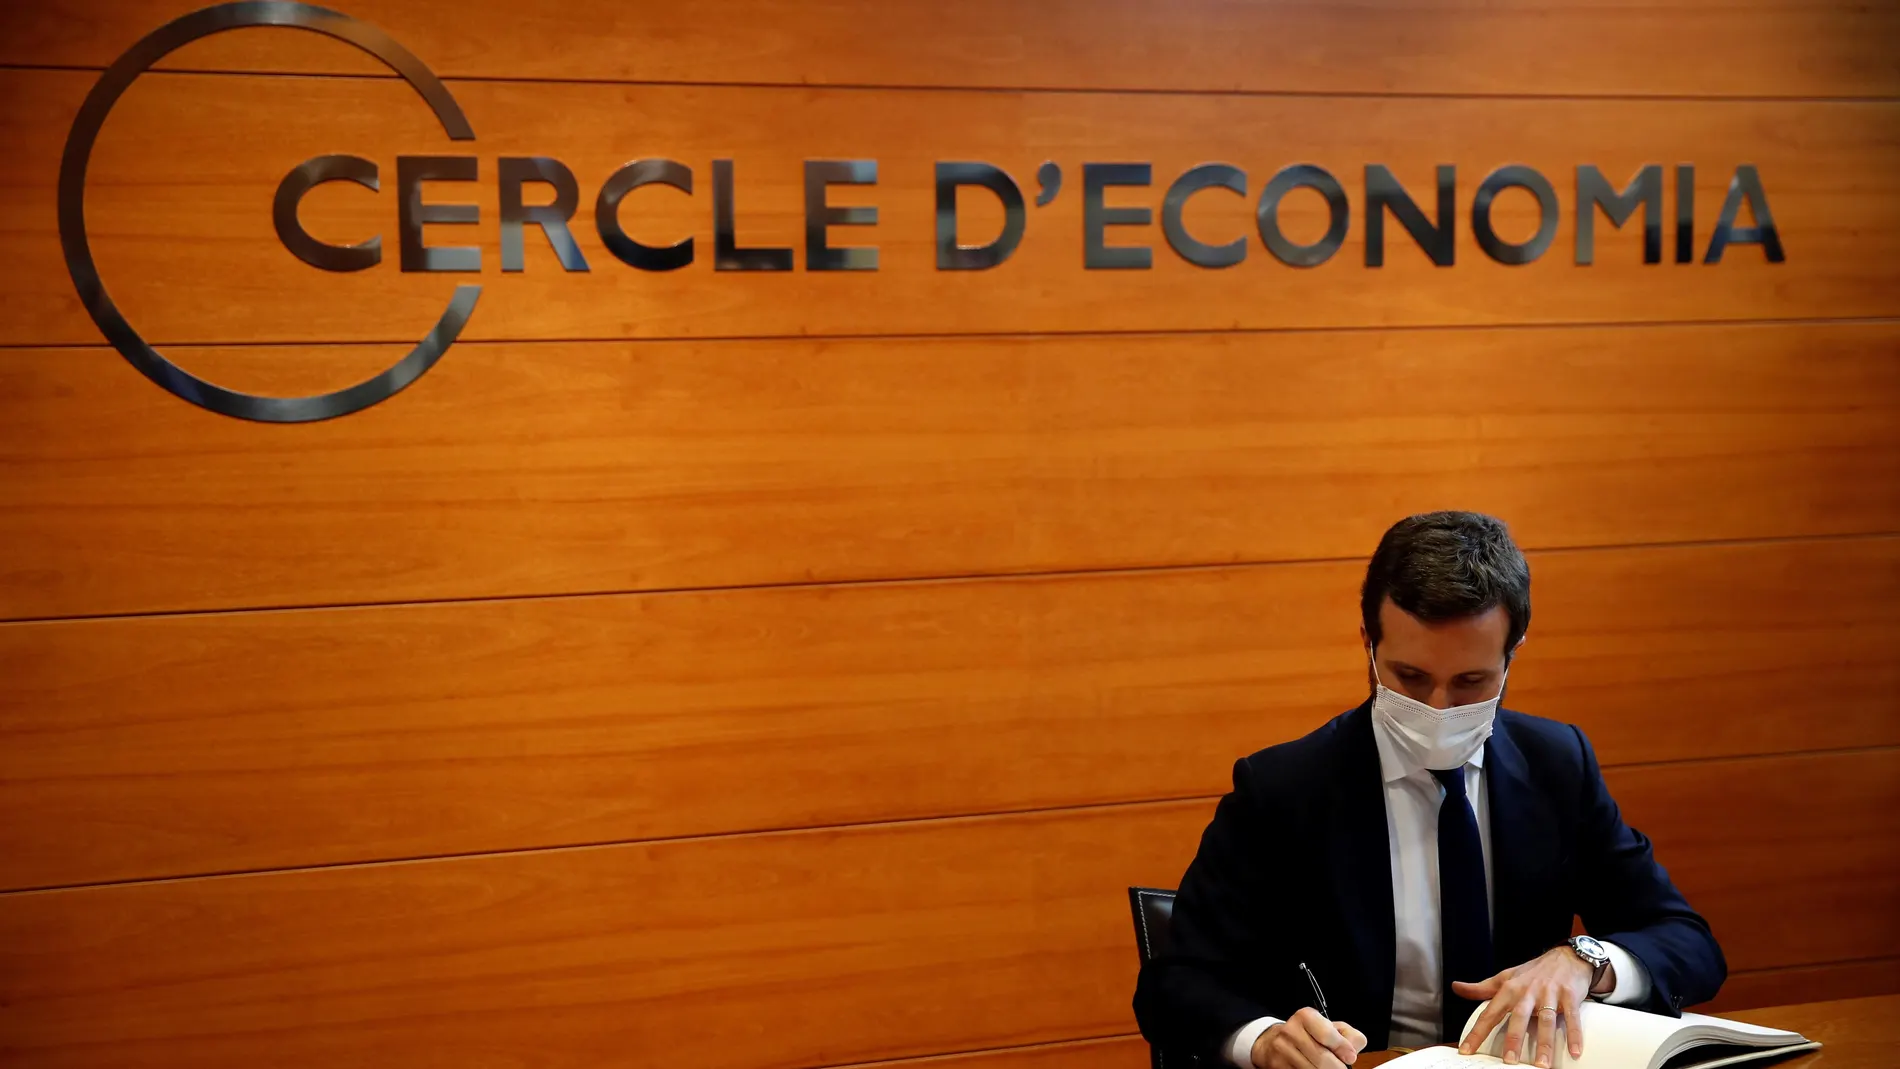 El presidente del PP, Pablo Casado, firma en el libro de honor antes de pronunciar este lunes una conferencia organizada por el Cercle d'Economia de Barcelona